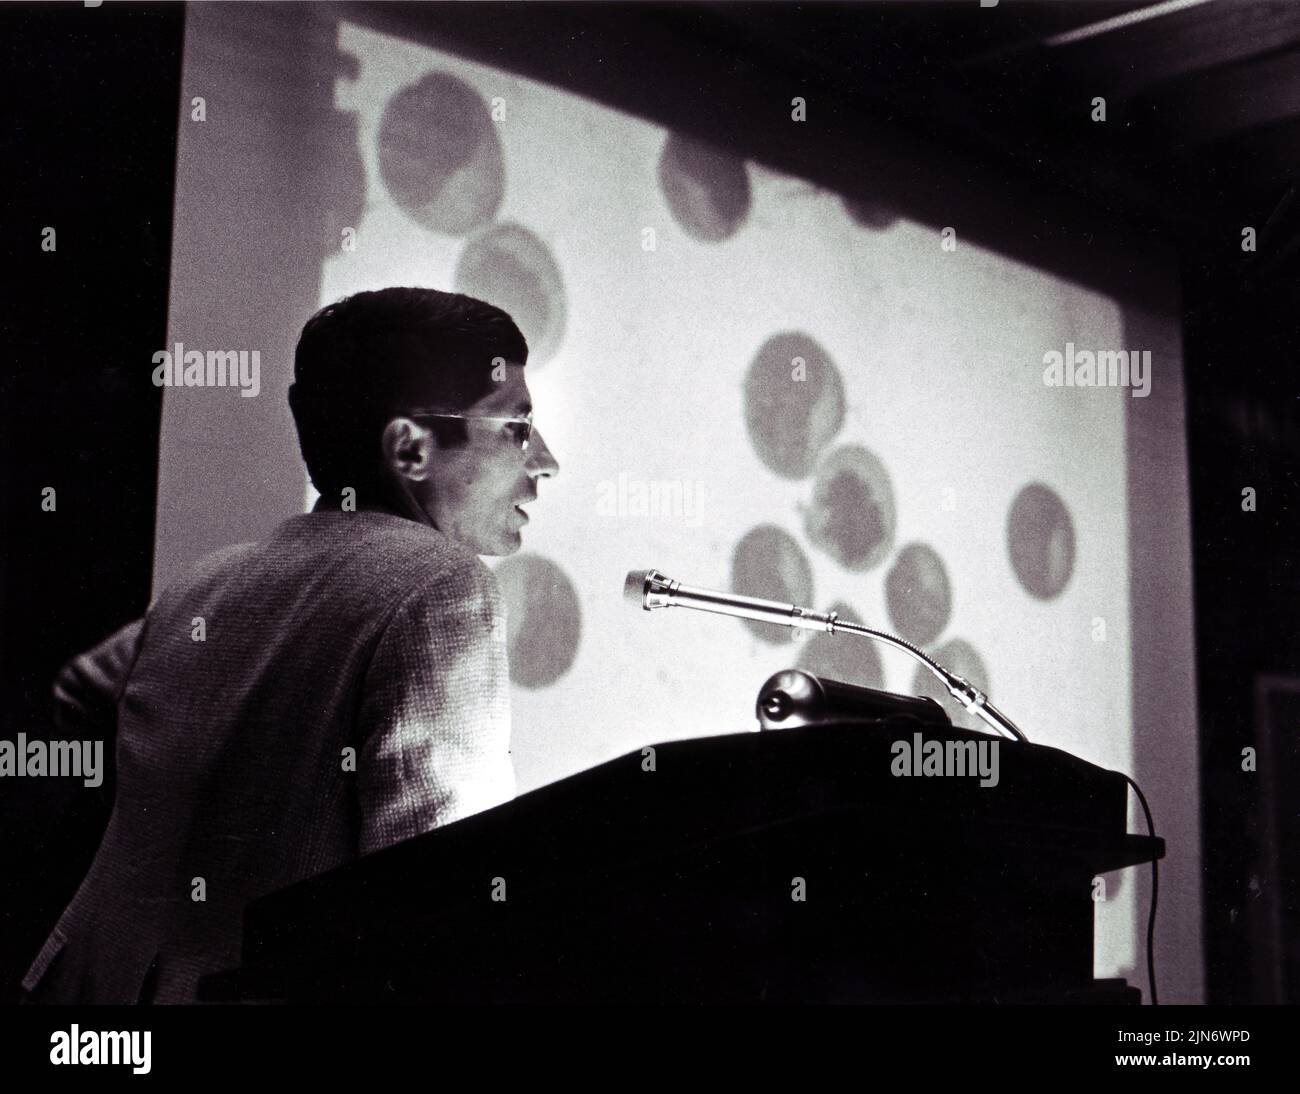 Anthony Fauci spricht, 1985 Dr. Anthony Fauci hielt 1985 einen Vortrag im Zusammenhang mit AIDS. Kredit: NIAID Stockfoto